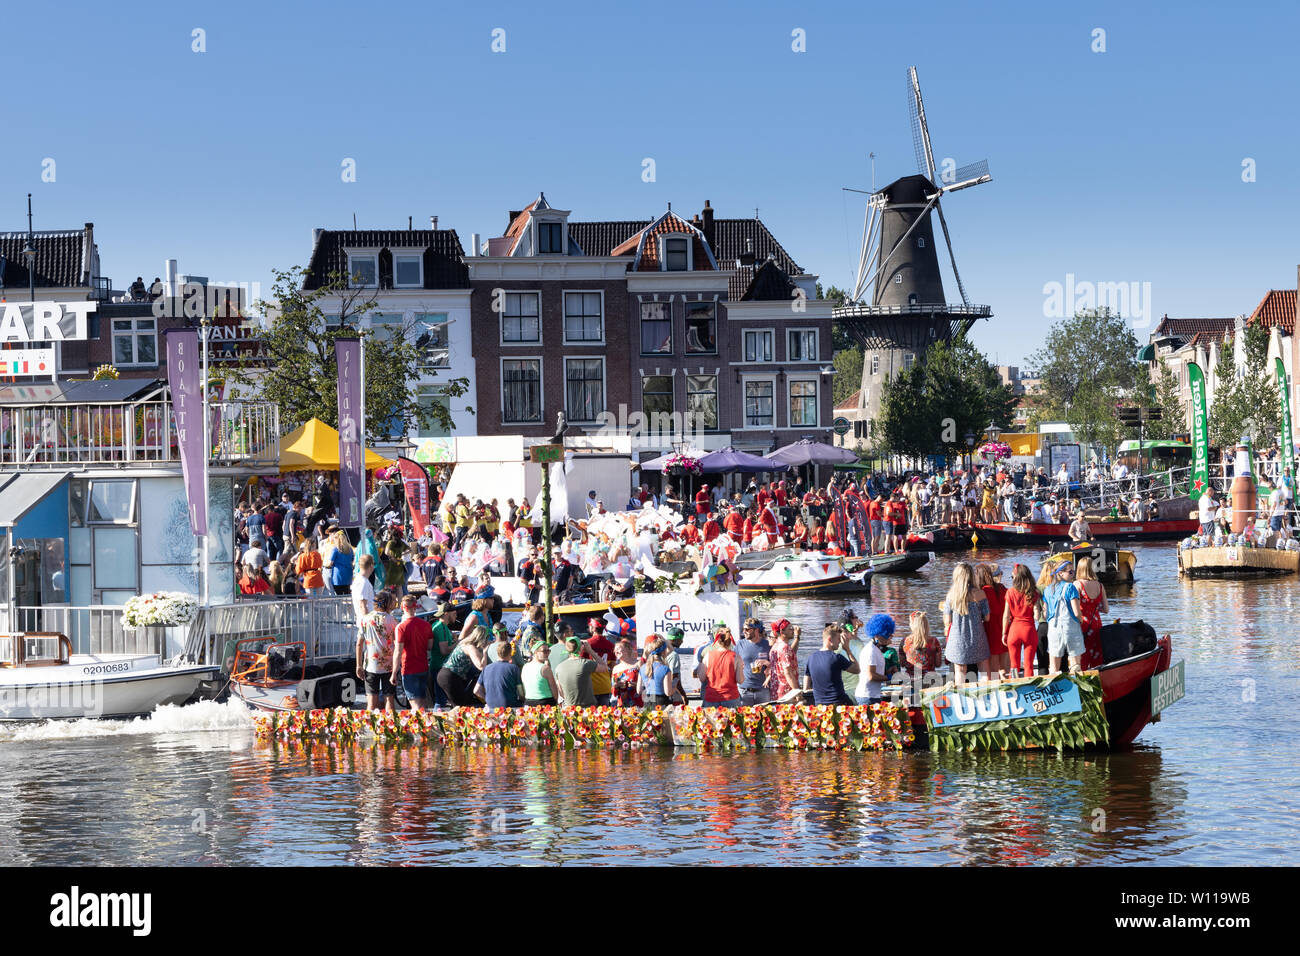 LEIDEN, Pays-Bas - 27 juin 2019 : fête traditionnelle connue sous le Lakenfeesten Leidse célèbre par parade des bateaux décorés rigolo.- Image Banque D'Images